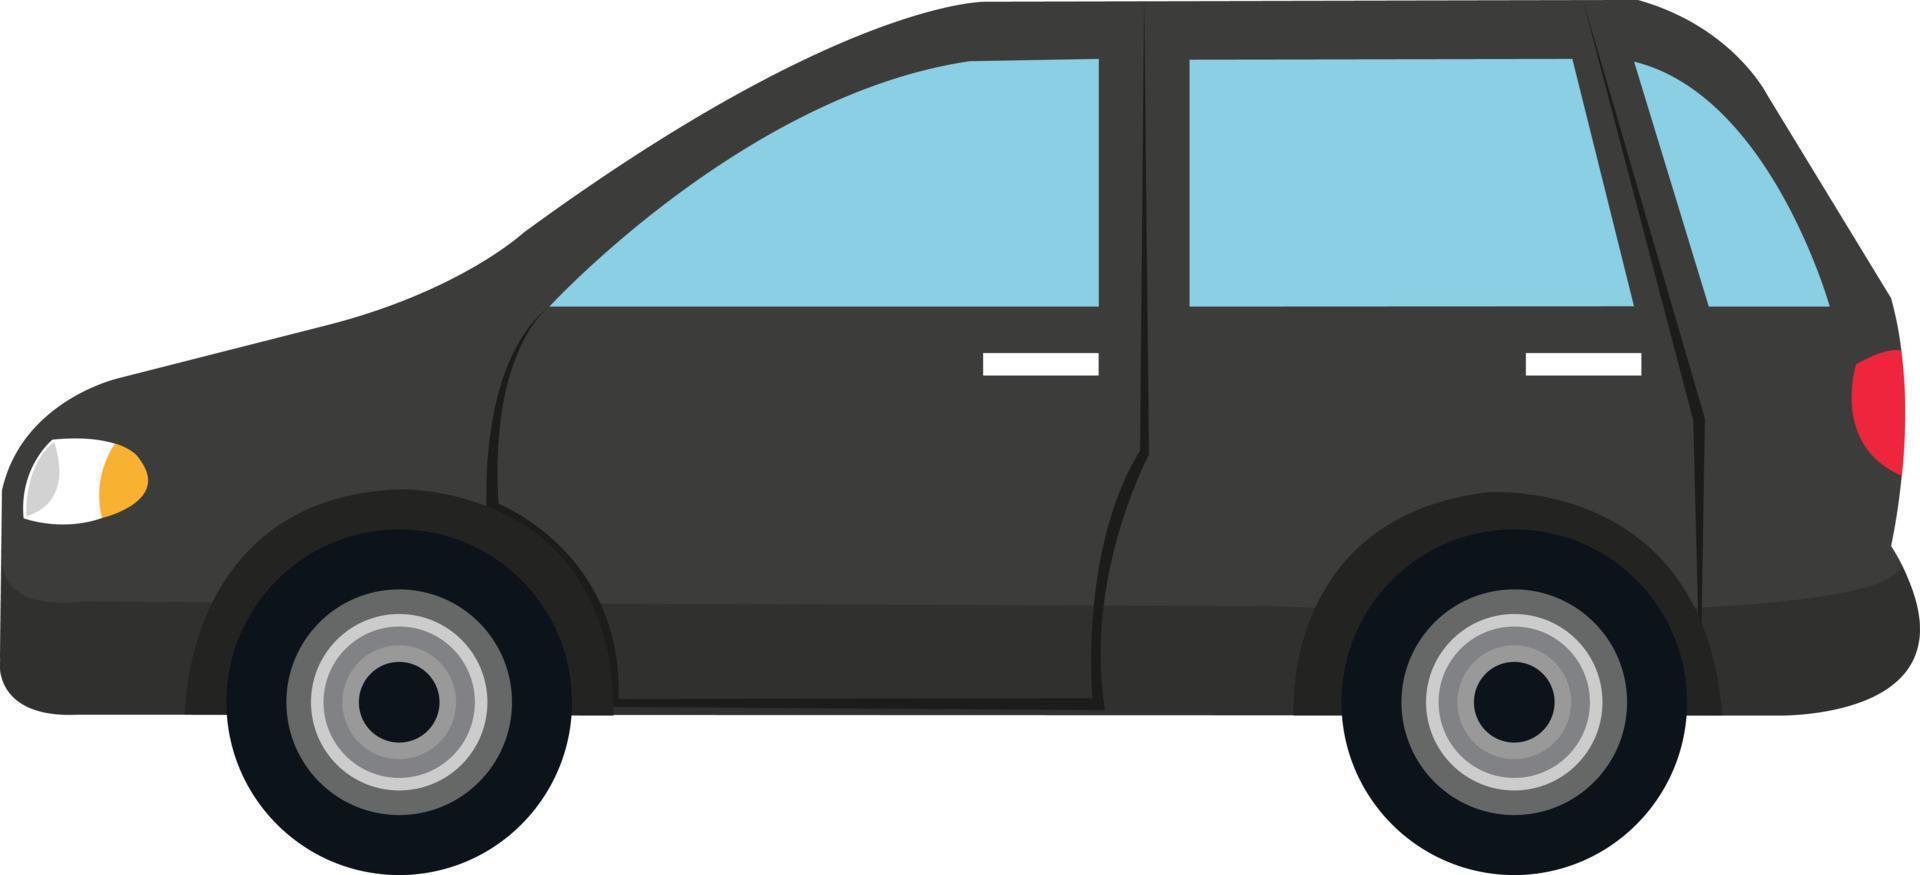 vetor de carro preto sobre fundo branco. carro sedan, carro universal, hatchback, carro suv, automóvel e táxi para desenhos animados 3d.